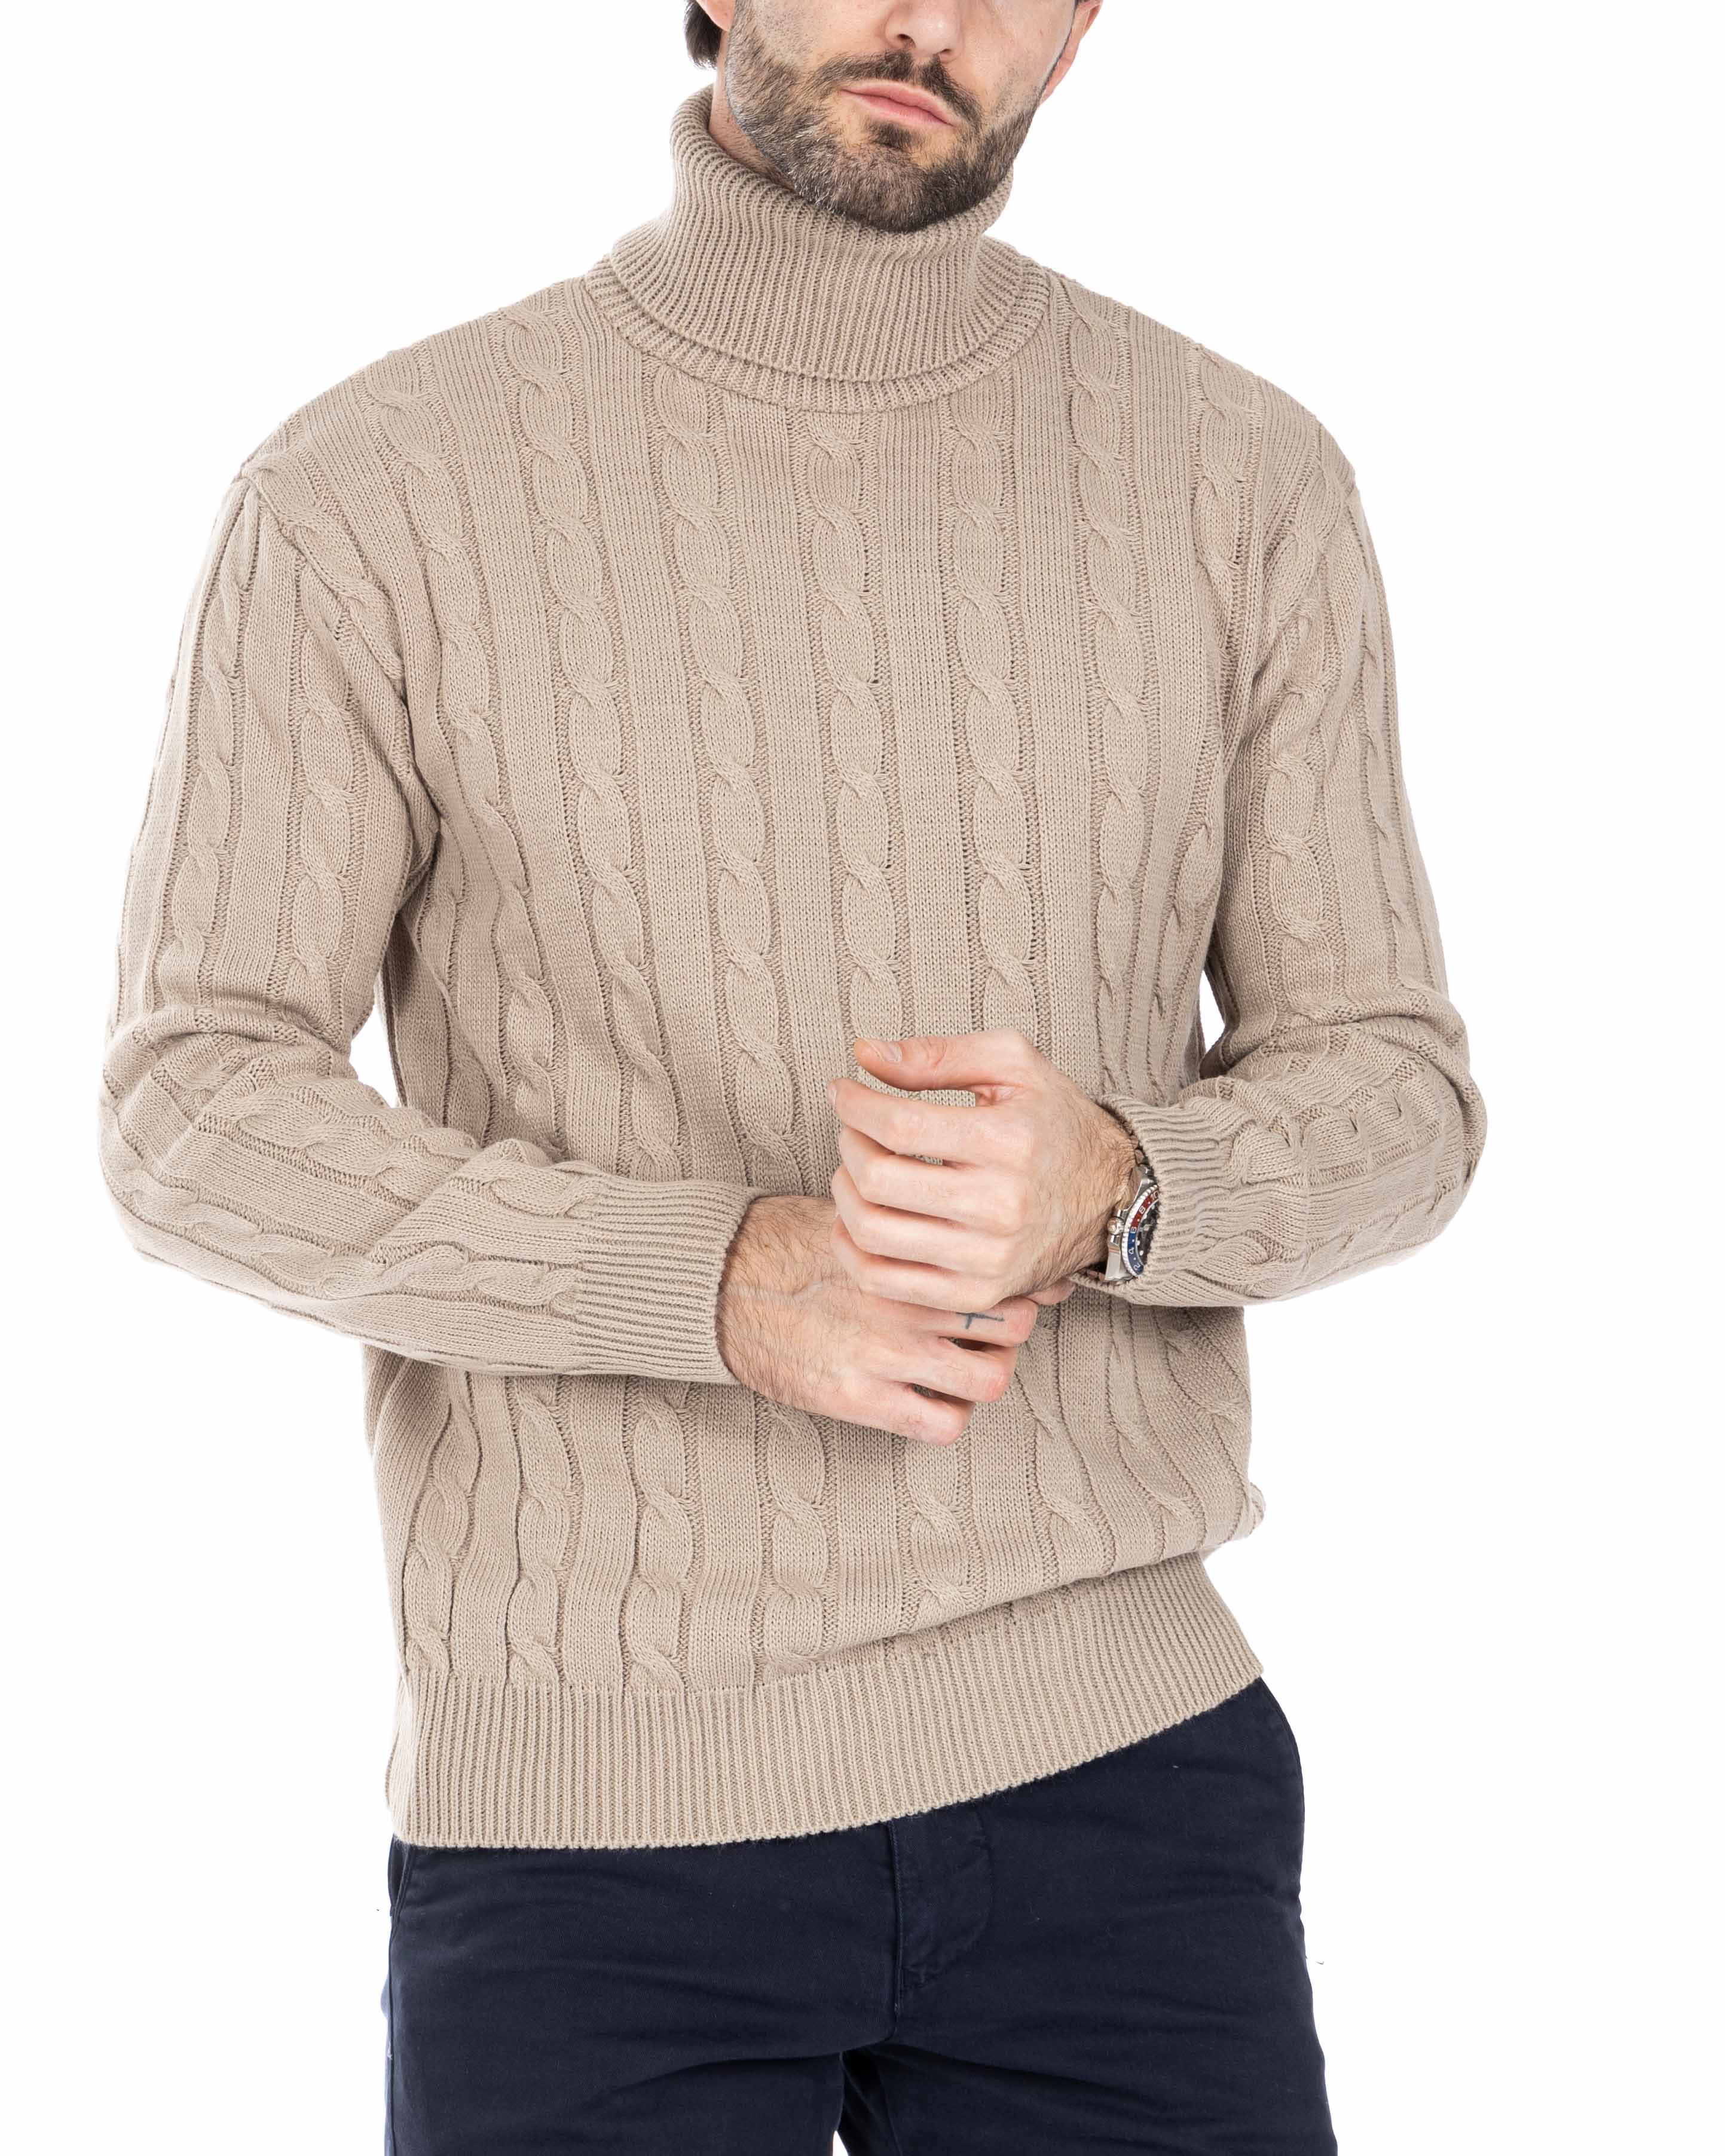 Crovie - maglione beige con trecce collo alto